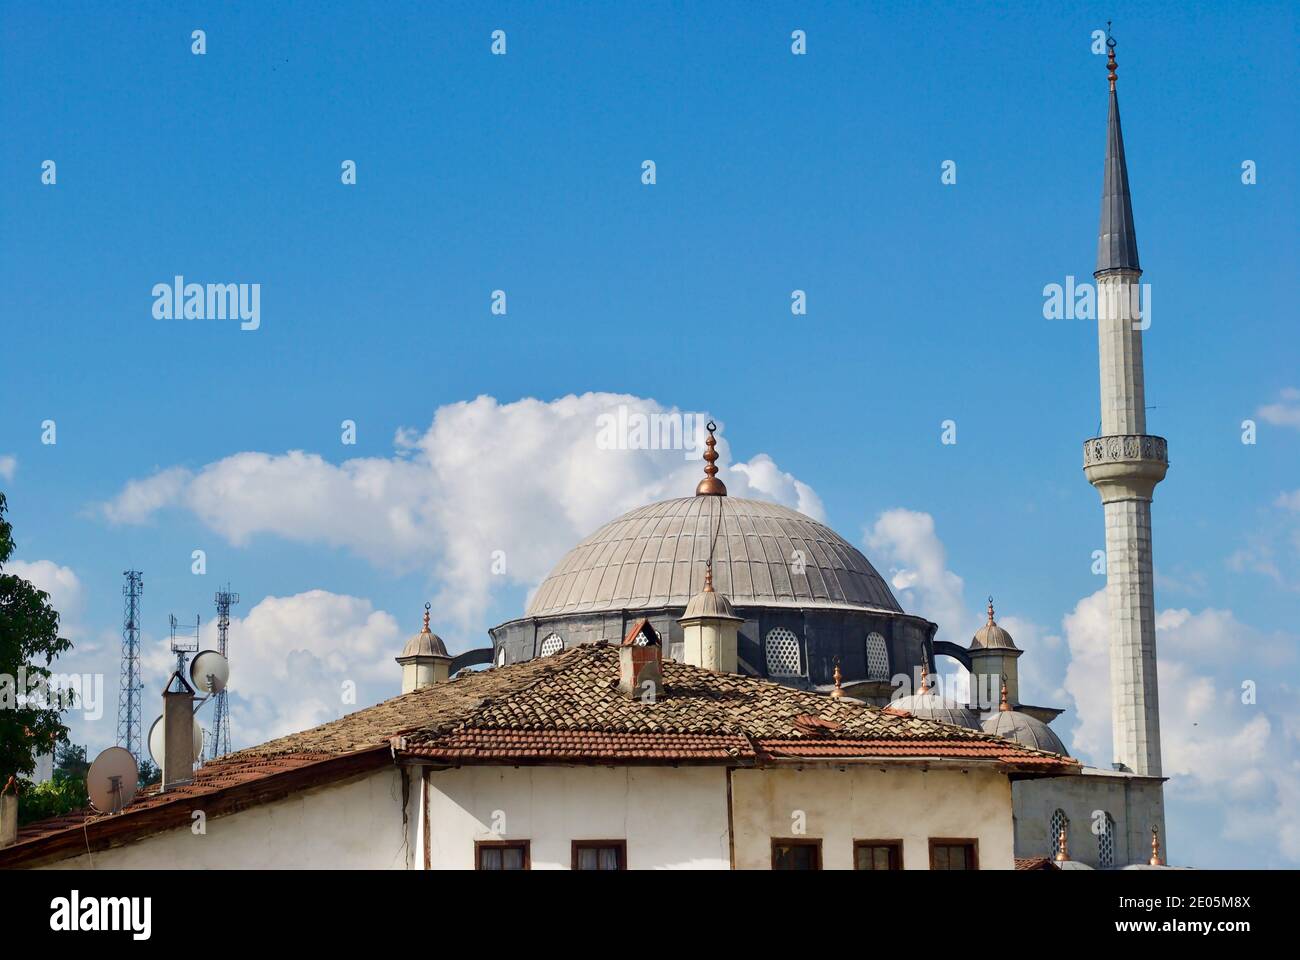 L'esterno della moschea DI IZZET Pasha, Cami, risale al XVIII secolo e prende il nome da IZZET Mehmet Pasha, un alto rango ufficiale dell'epoca ottomana. Safranbolu Foto Stock